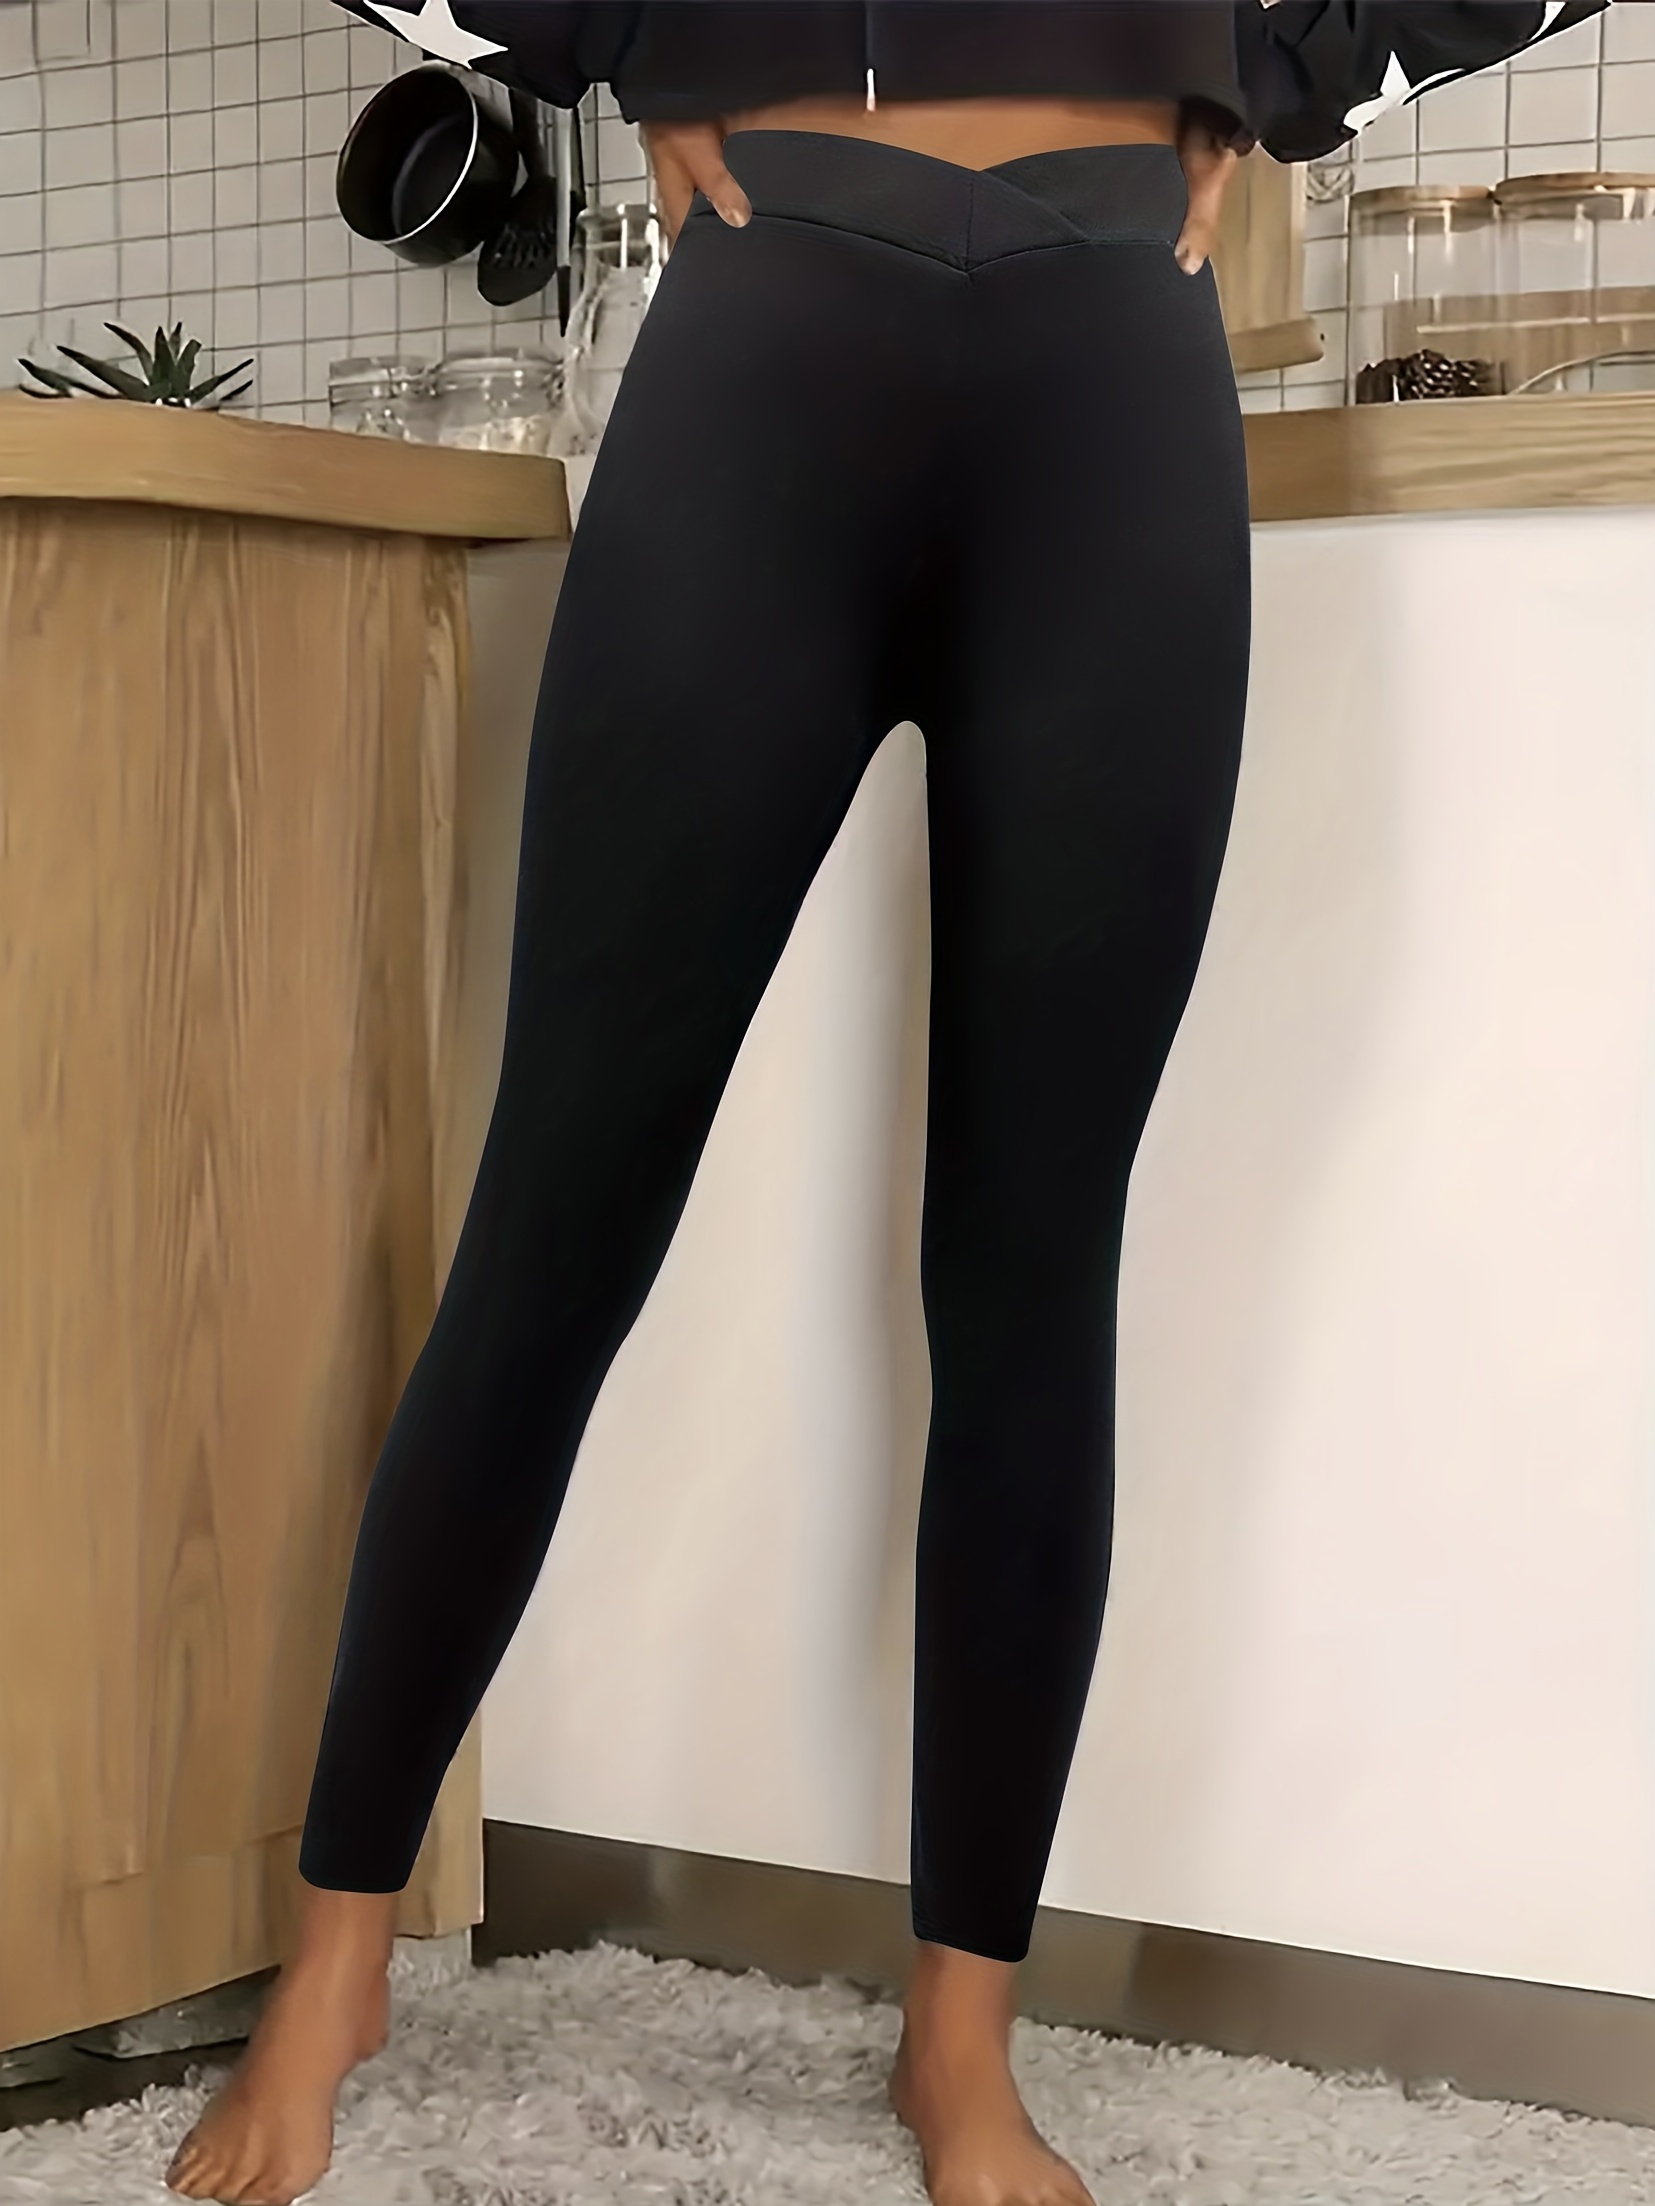 Lululemon crop leggings size 2 color black. For - Depop